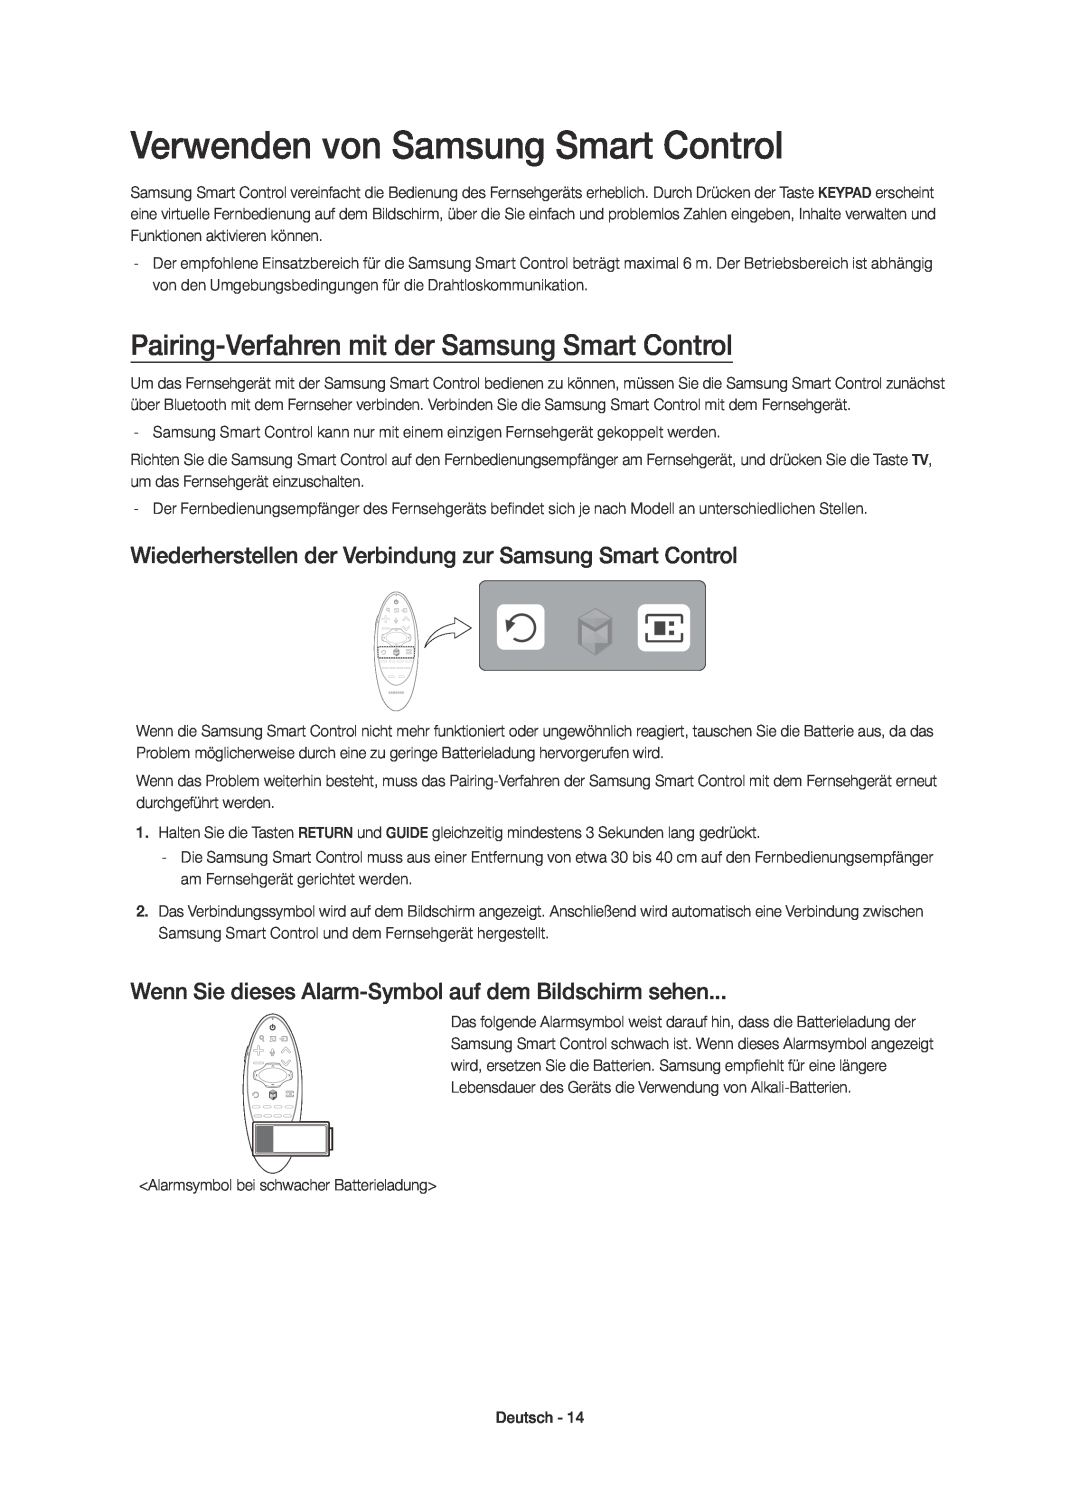 Samsung UE48H6770SVXZG manual Verwenden von Samsung Smart Control, Pairing-Verfahren mit der Samsung Smart Control 